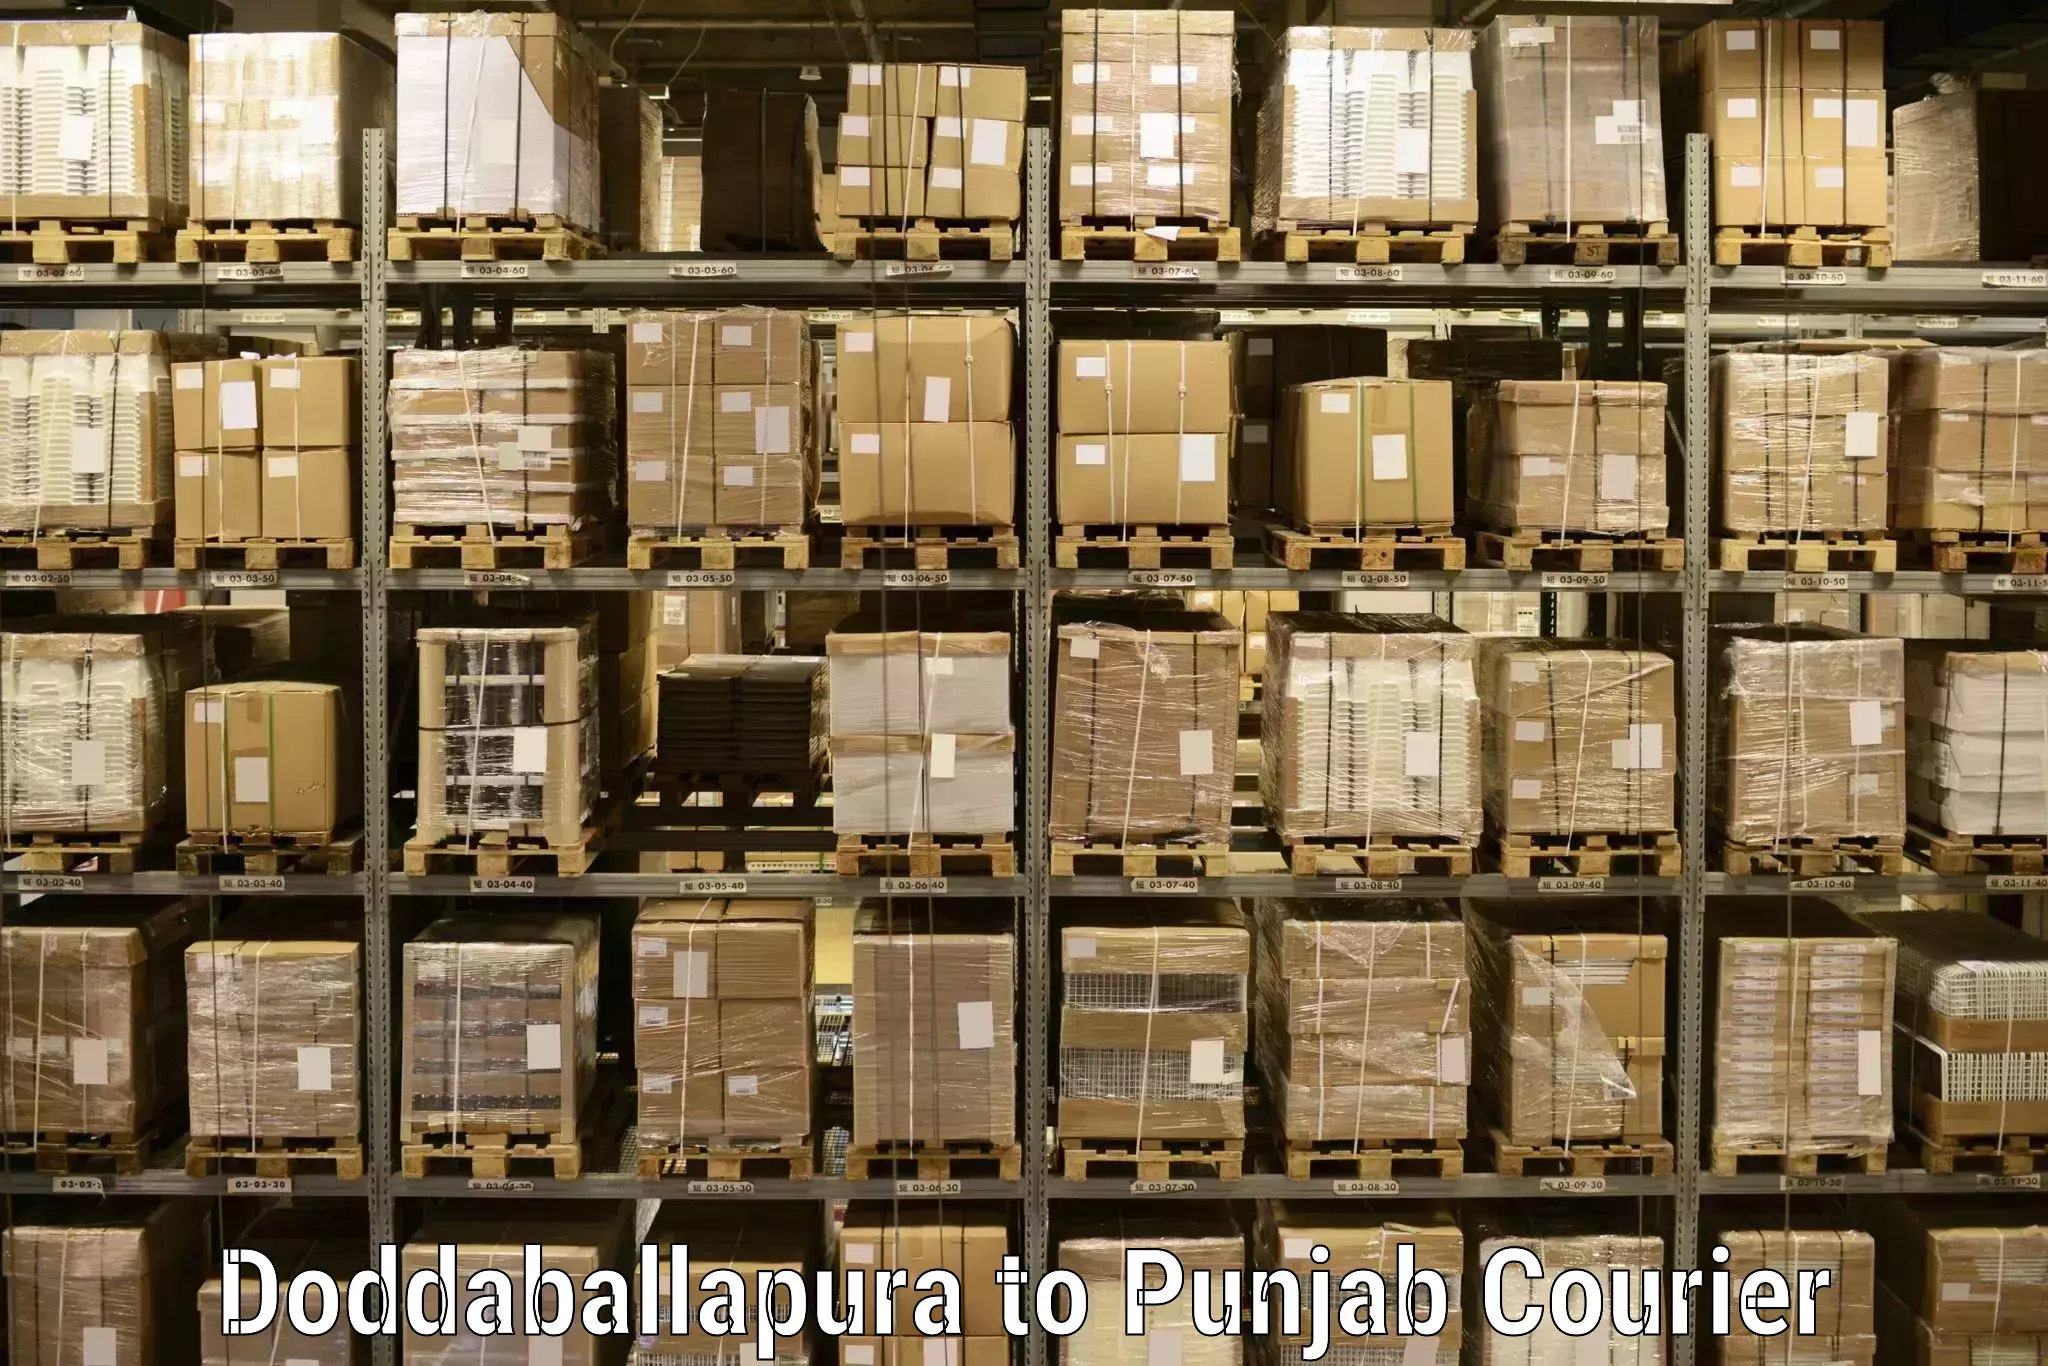 Affordable parcel service in Doddaballapura to Barnala